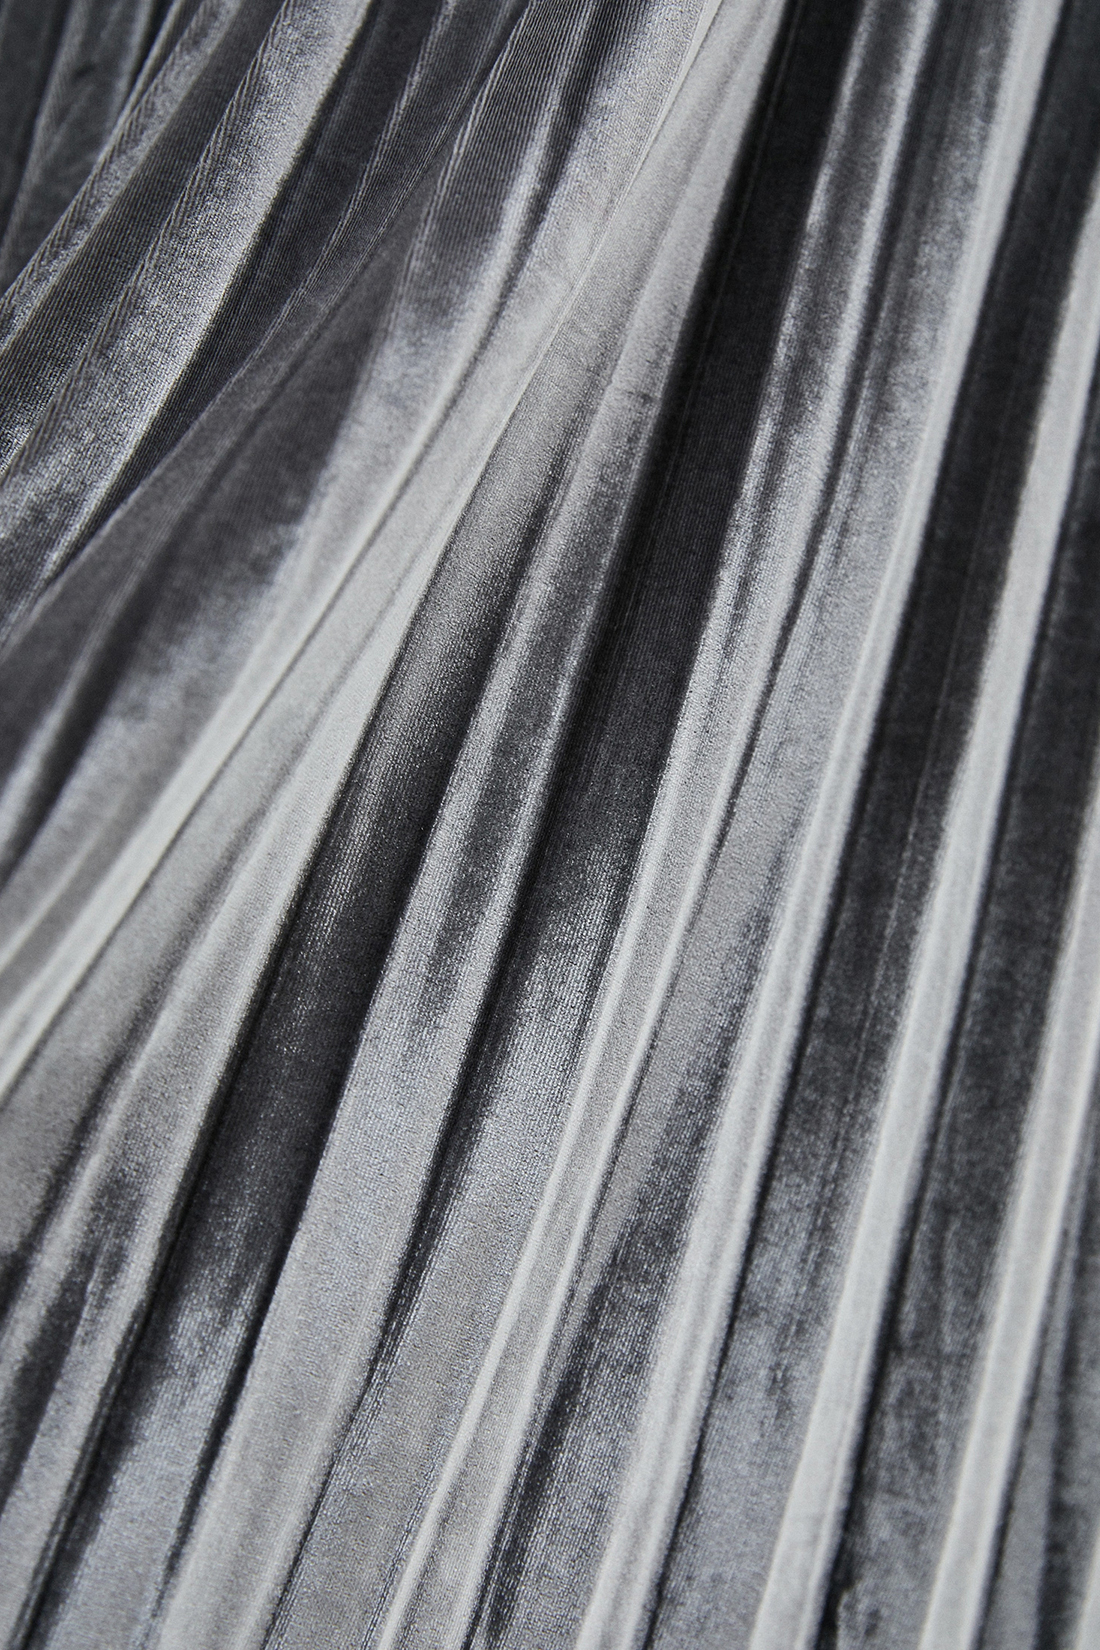 Юбка (арт. baon B470523), размер L, цвет серый Юбка (арт. baon B470523) - фото 3